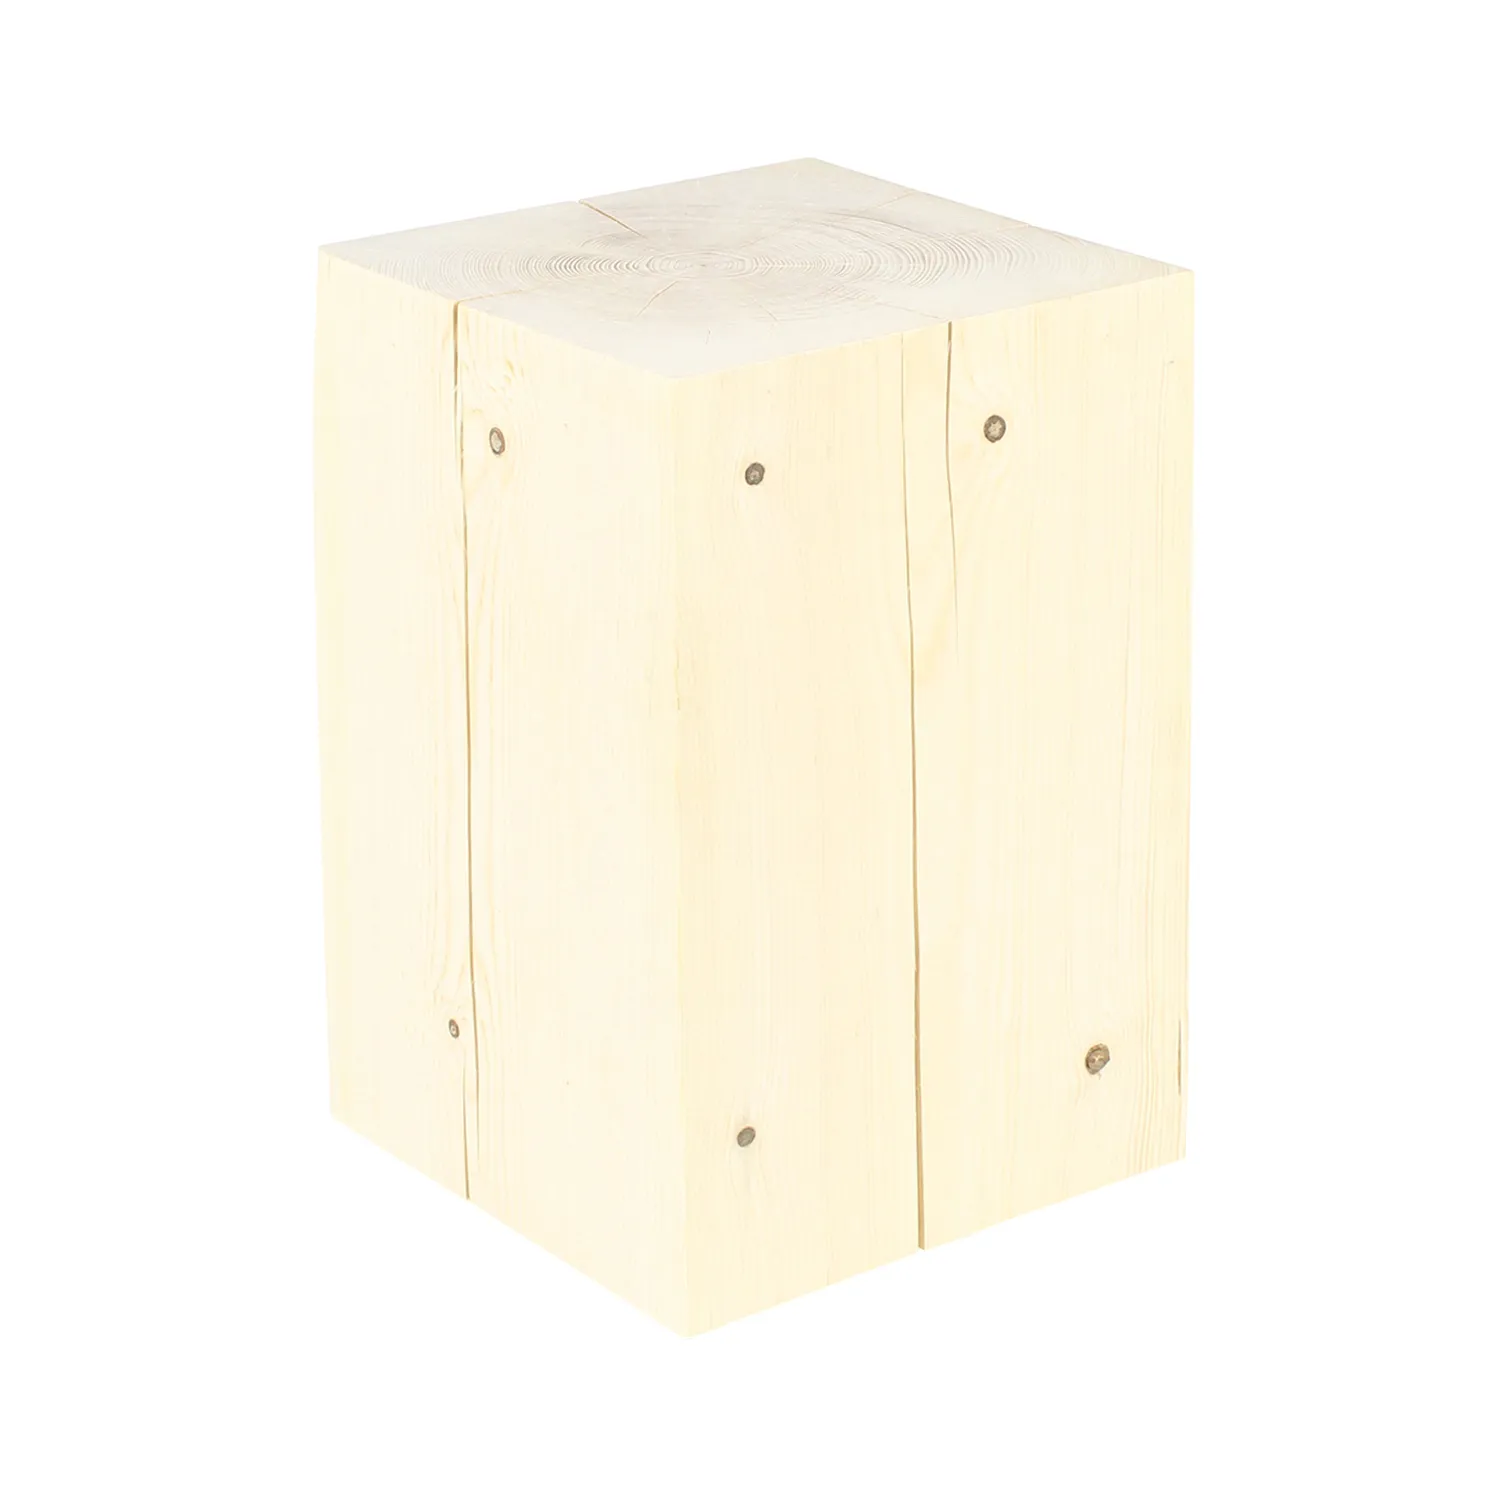 Quadratischer Holzblock aus Fichte